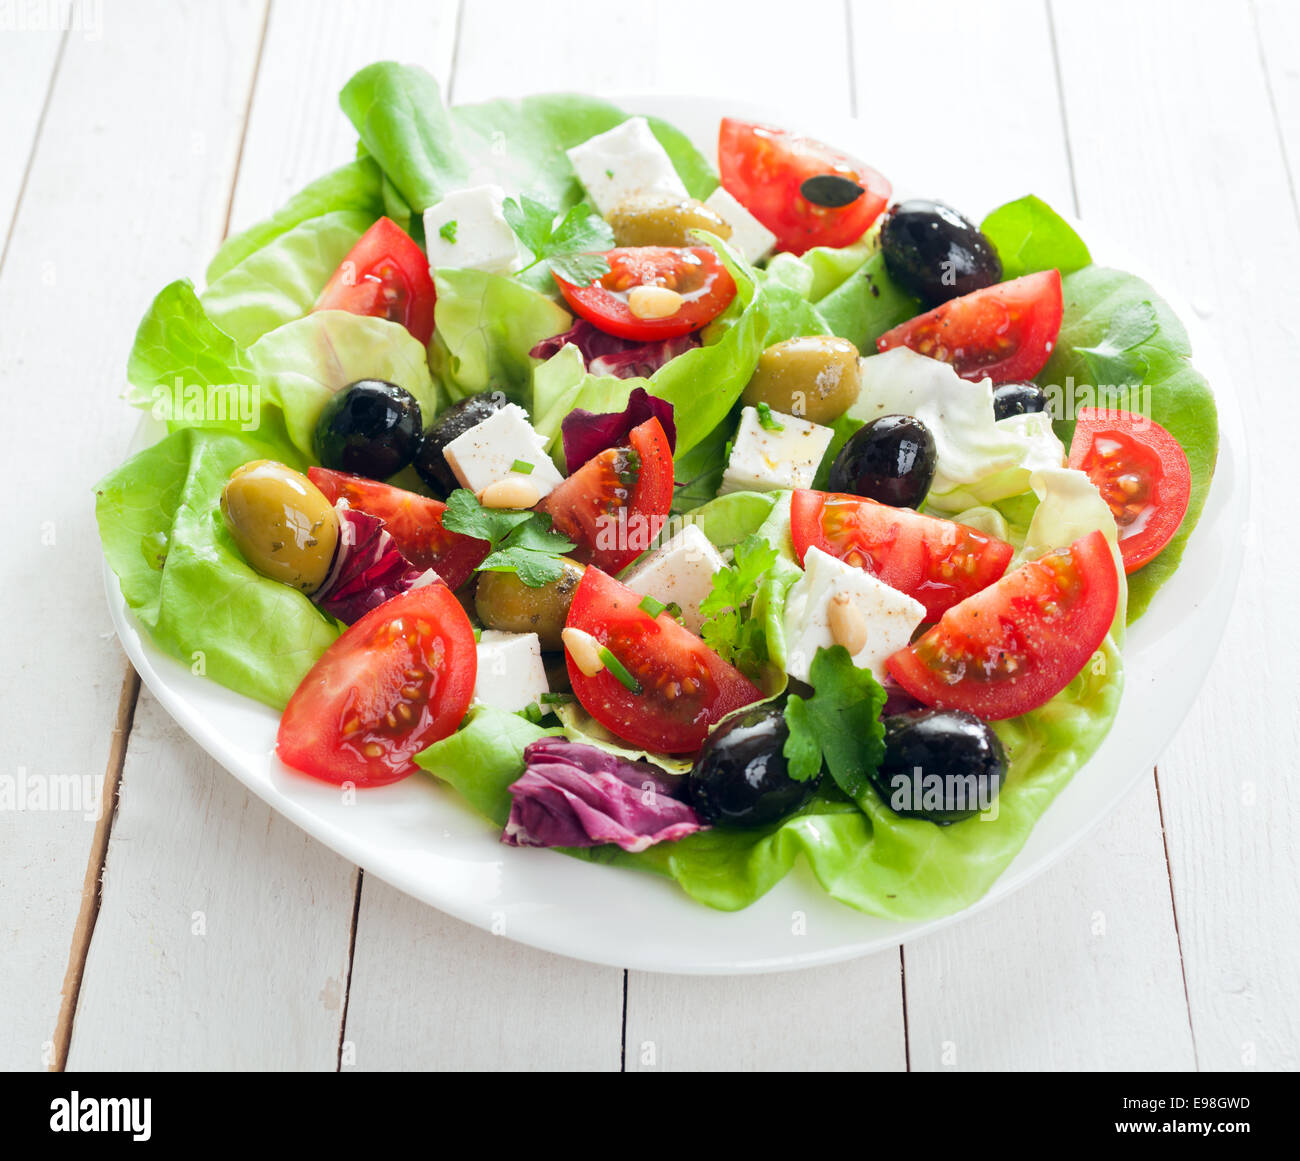 Fresh Salade méditerranéenne à la feta, olives, laitues, fines herbes et tomates arrosées d'huile d'olive pour un régime alimentaire sain, Banque D'Images